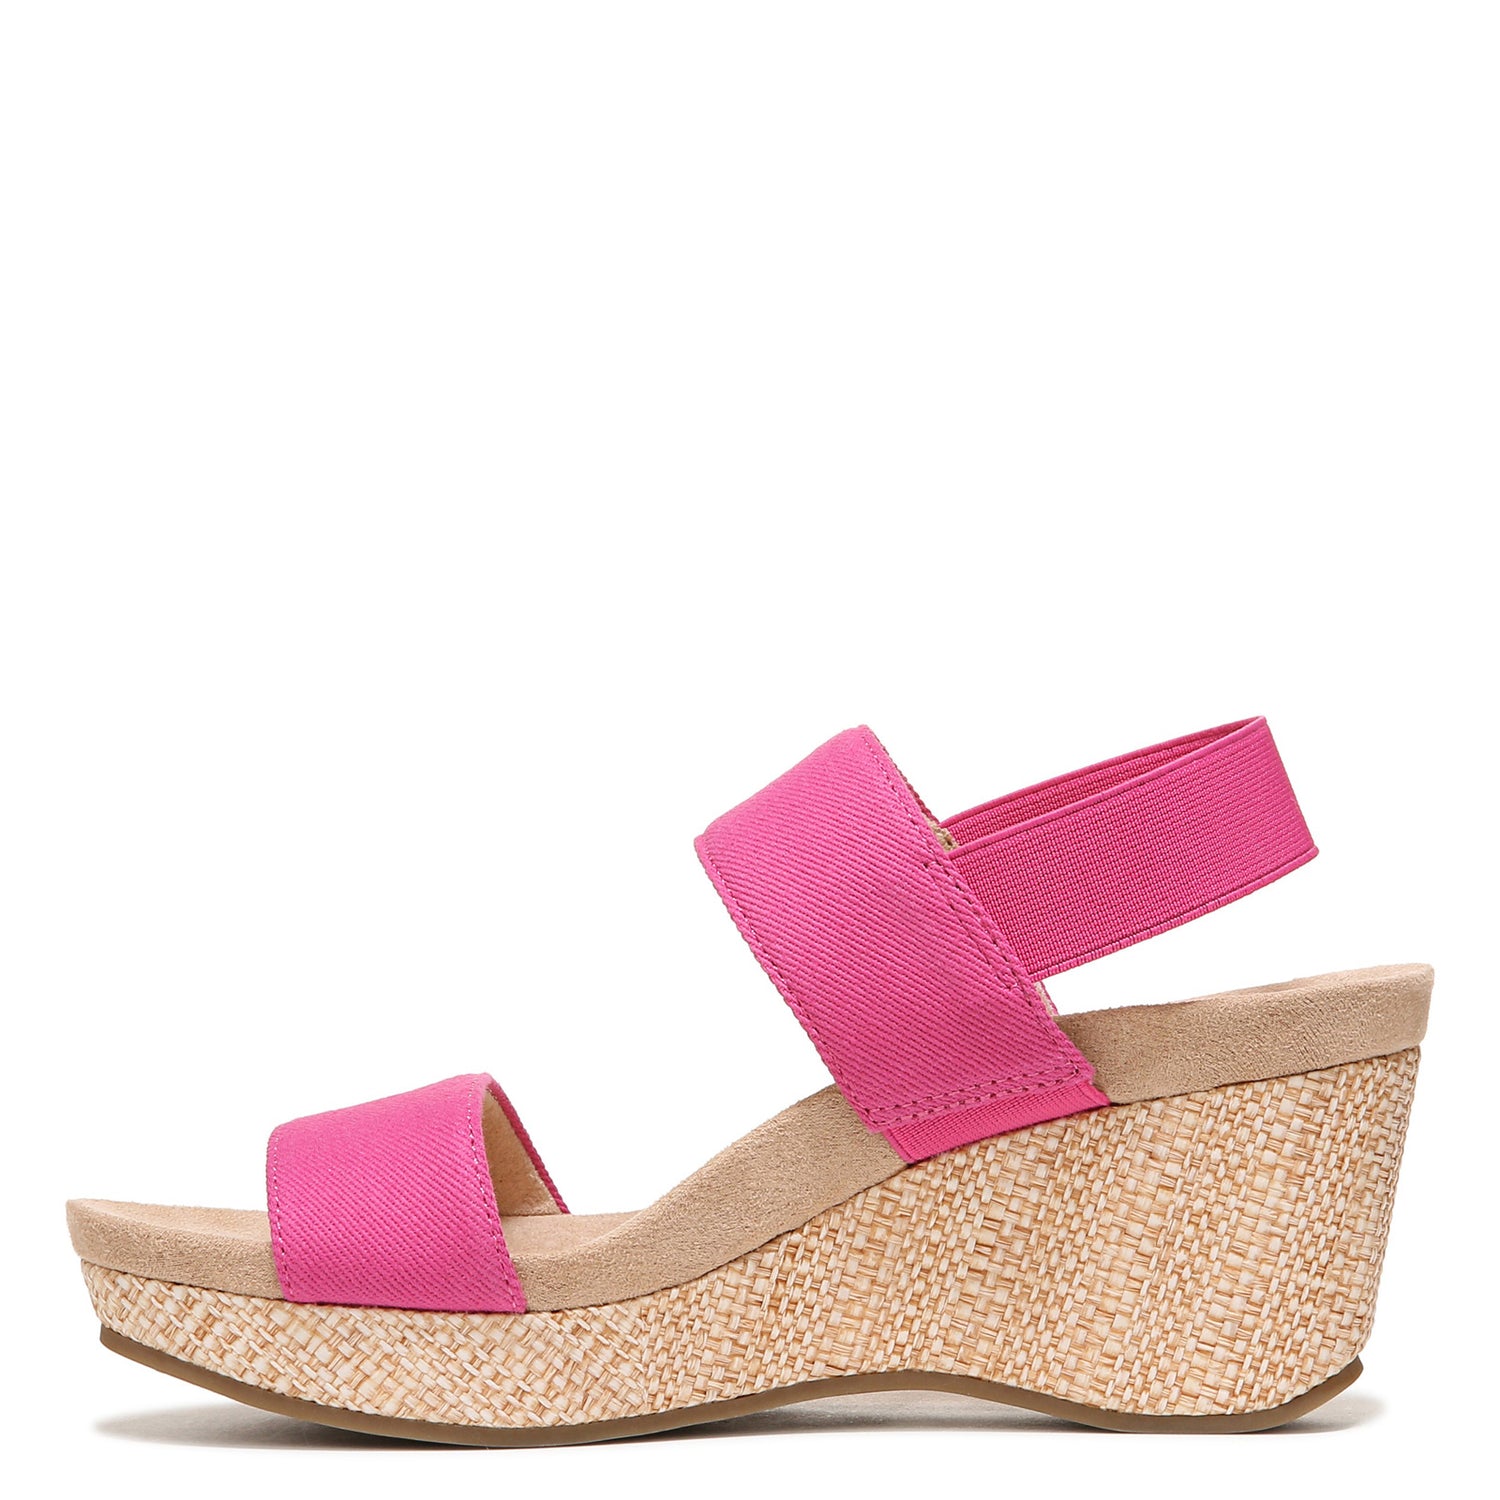 Peltz Shoes  Women's LifeStride Delta Sandal Pink G9467F6651